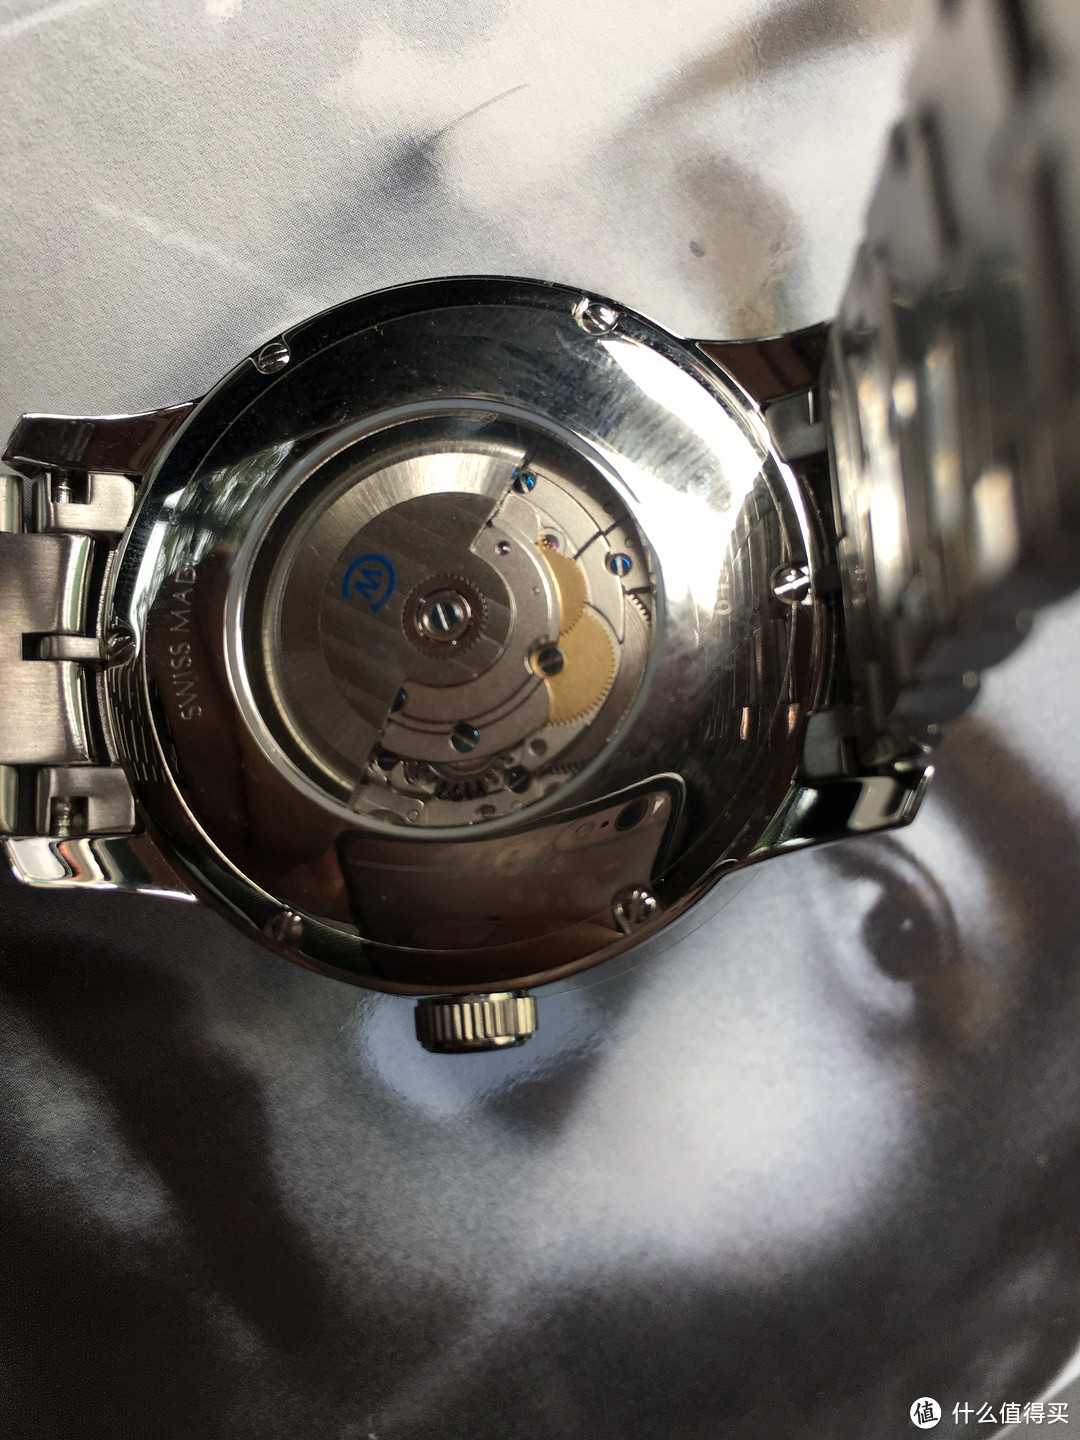 #本站首晒#  英国售瑞士男款机械腕表的海淘经验分享——Christopher Ward